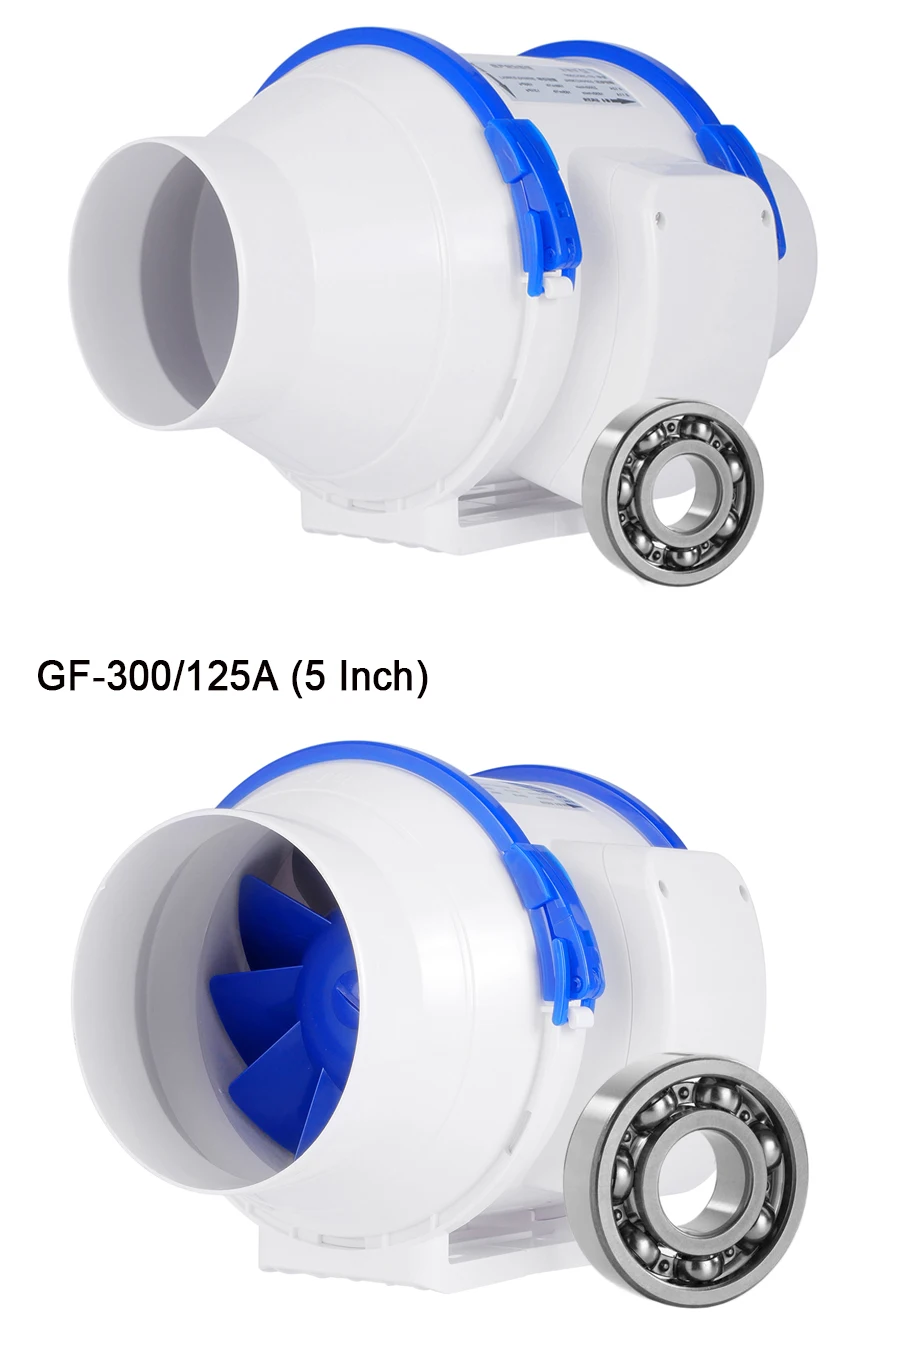 Hon& Guan 110V встроенные вентиляторы, 8 ''(ø200mm) Встроенный воздуховод вытяжной вентилятор Макс воздушный поток 800m3/ч для ванной комнаты, теплиц, гидропоники